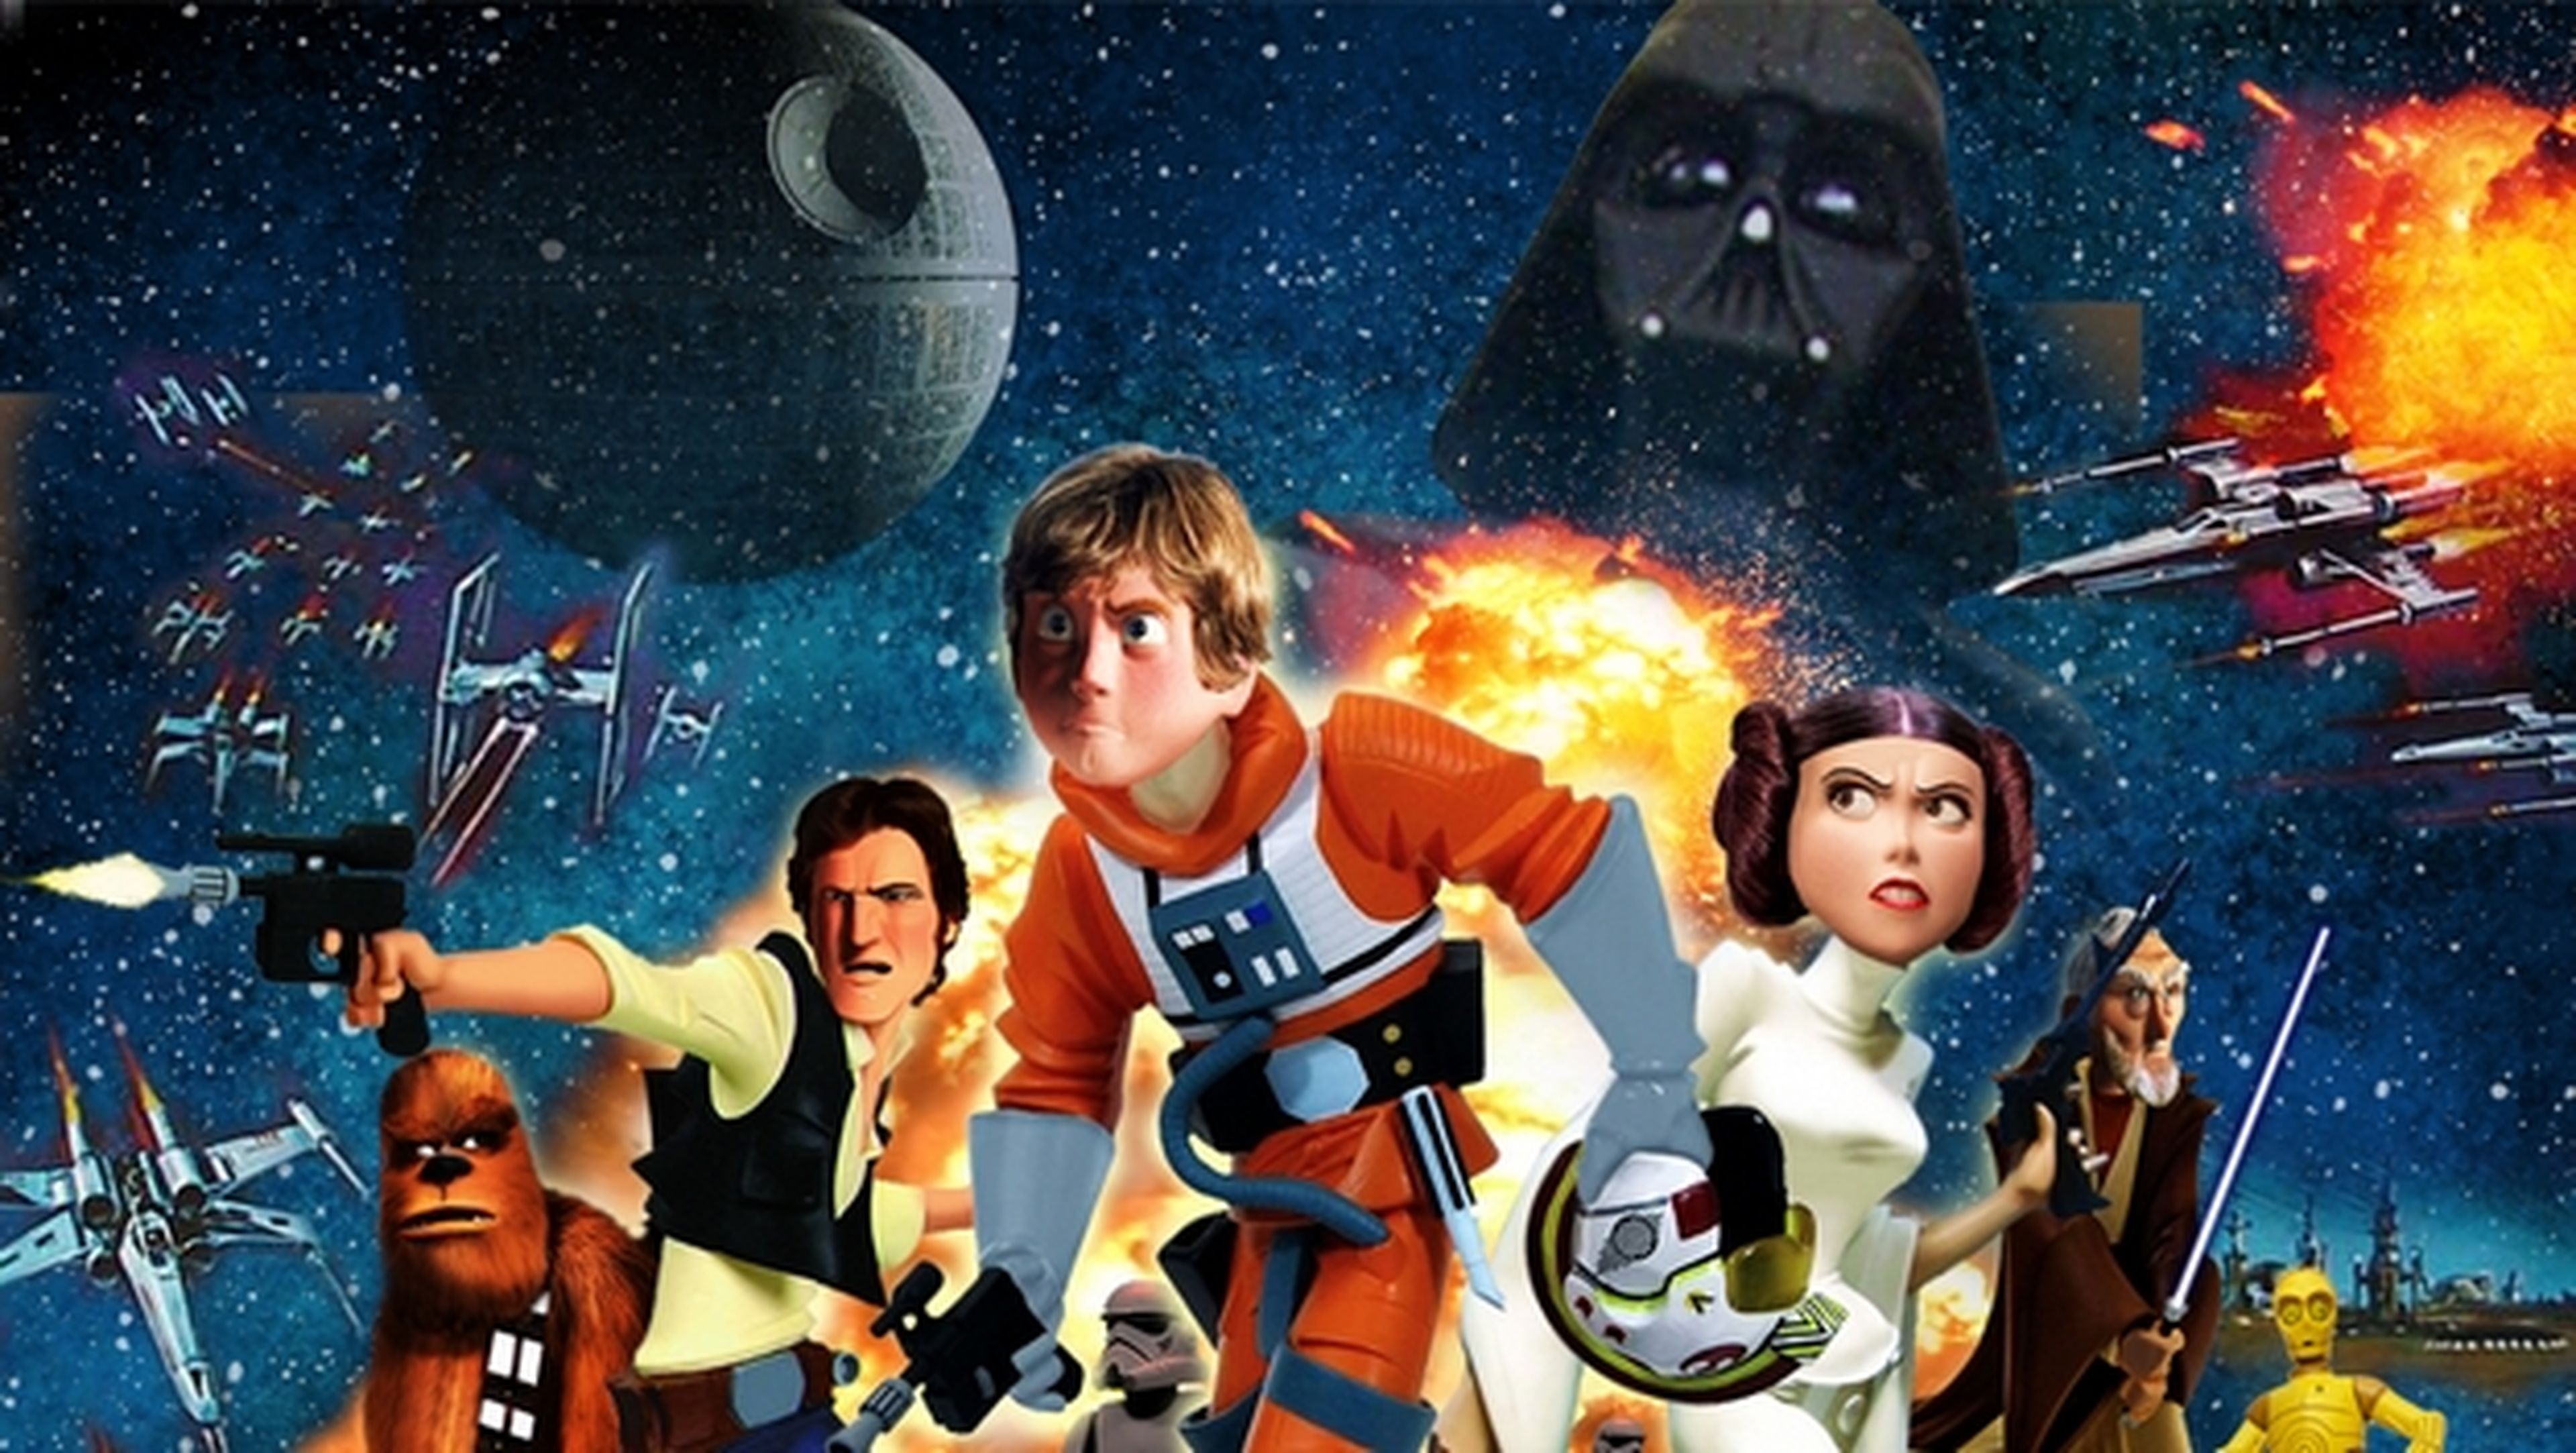 Primeros rumores sobre una adaptación Pixar de las películas de Star Wars